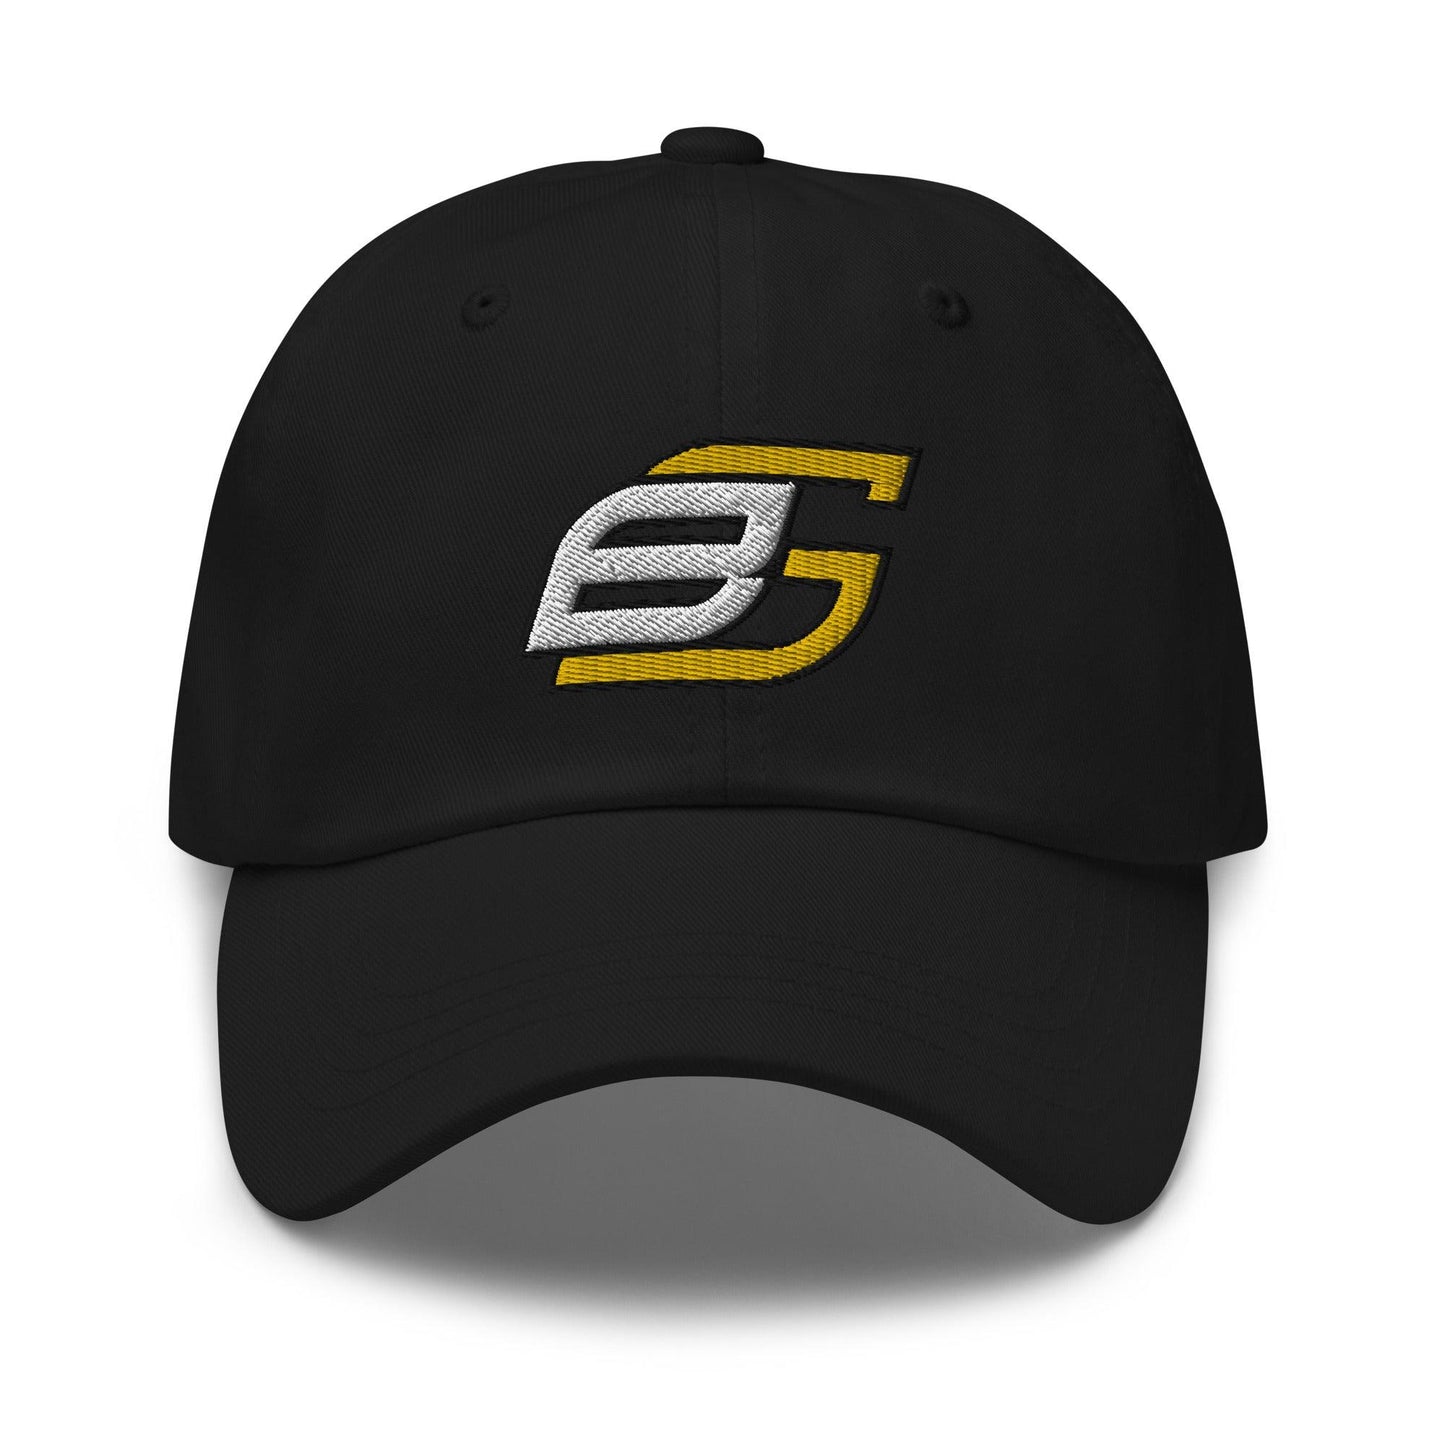 Ben Gamel "Elite" hat - Fan Arch